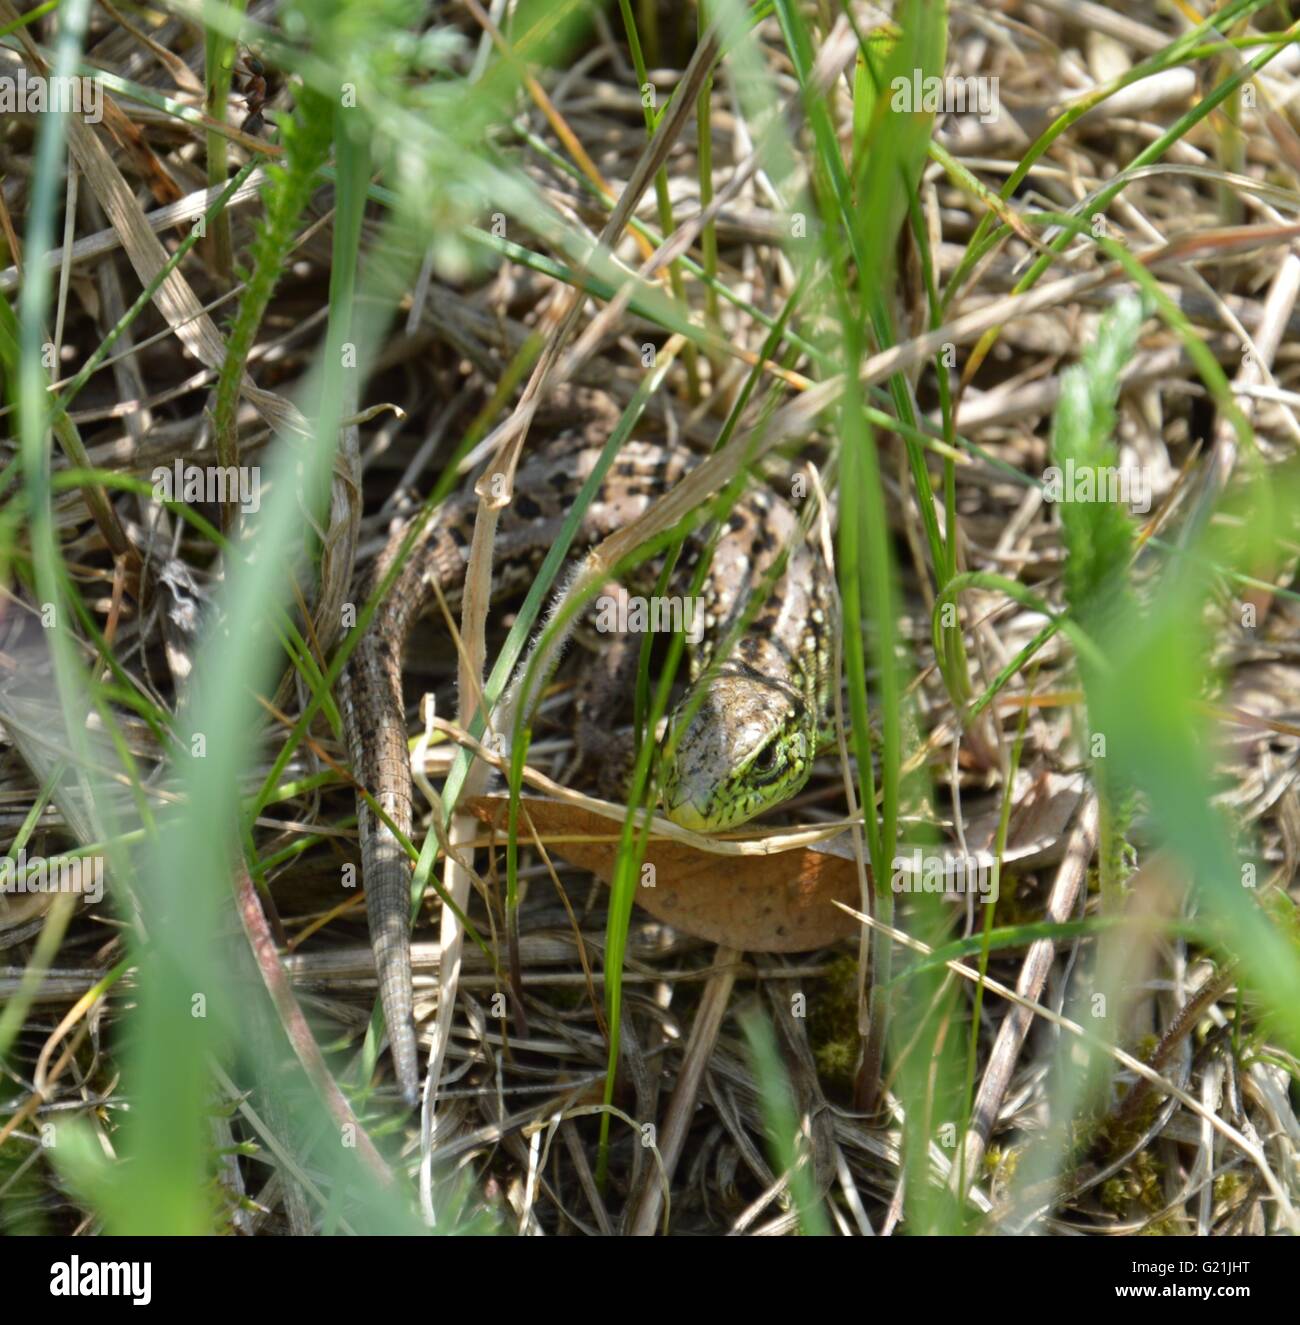 Lizard hidden in grass Stock Photo